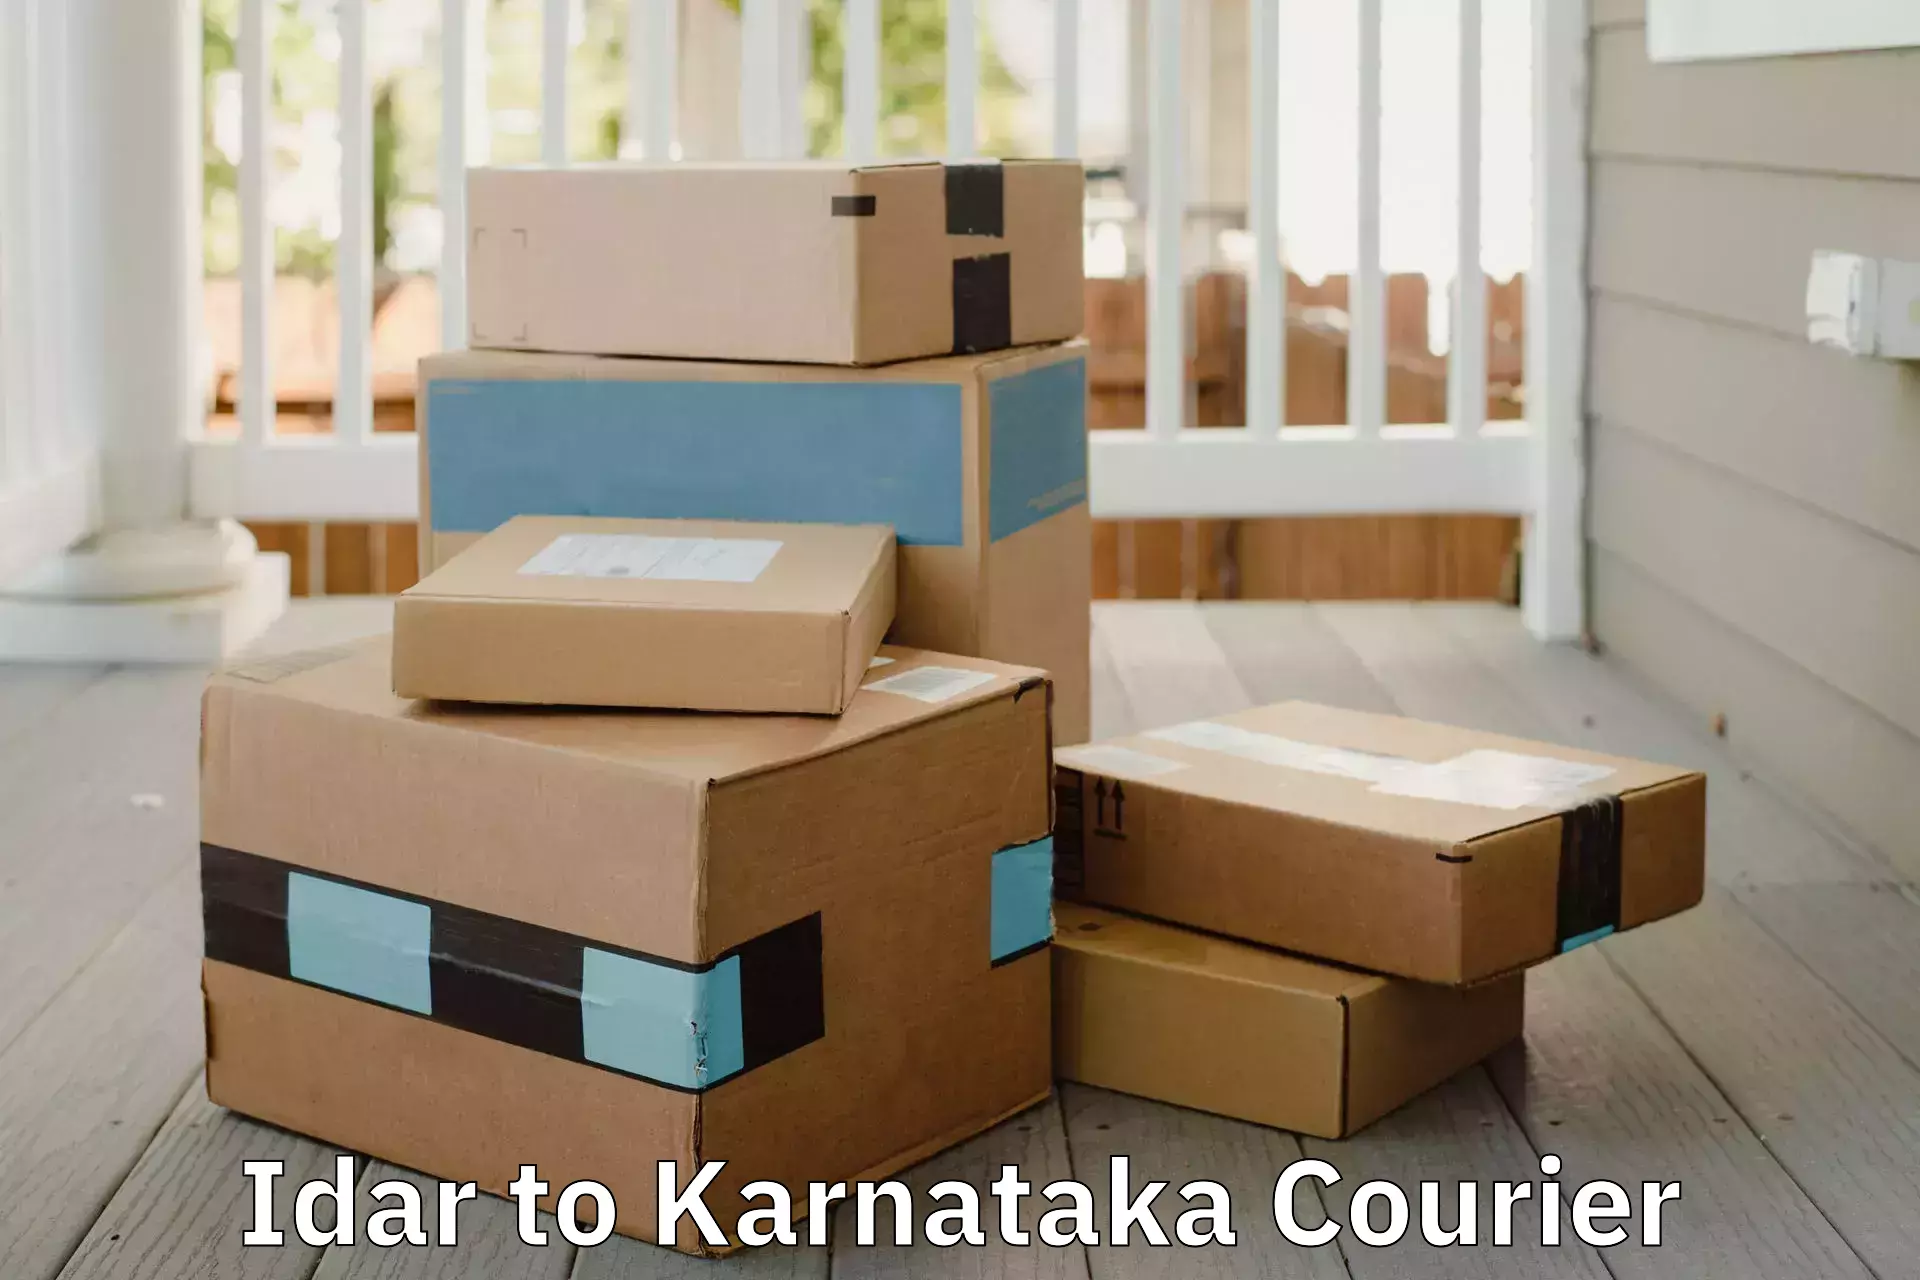 Residential furniture movers Idar to Karwar